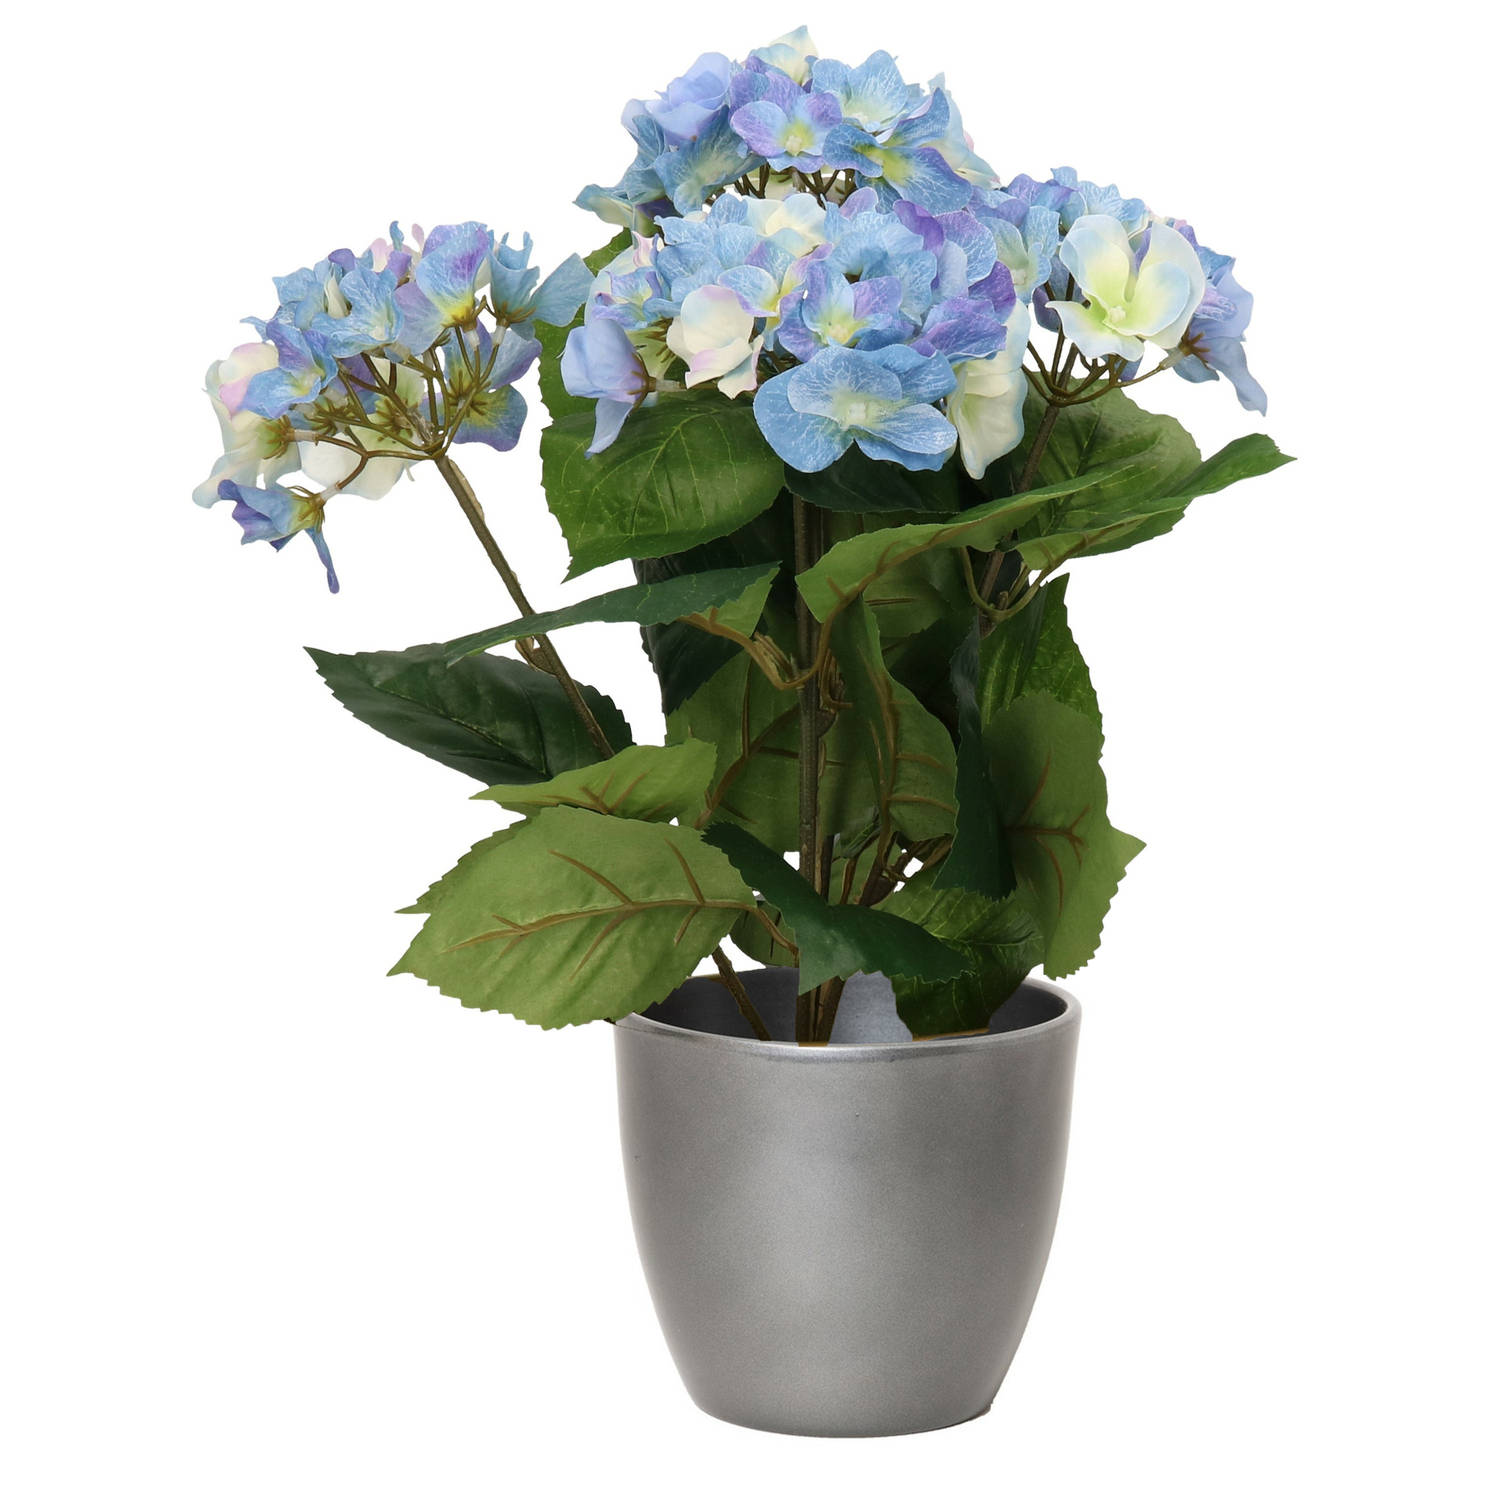 Hortensia kunstplant met bloemen blauw in pot metallic zilver 40 cm hoog Kunstplanten